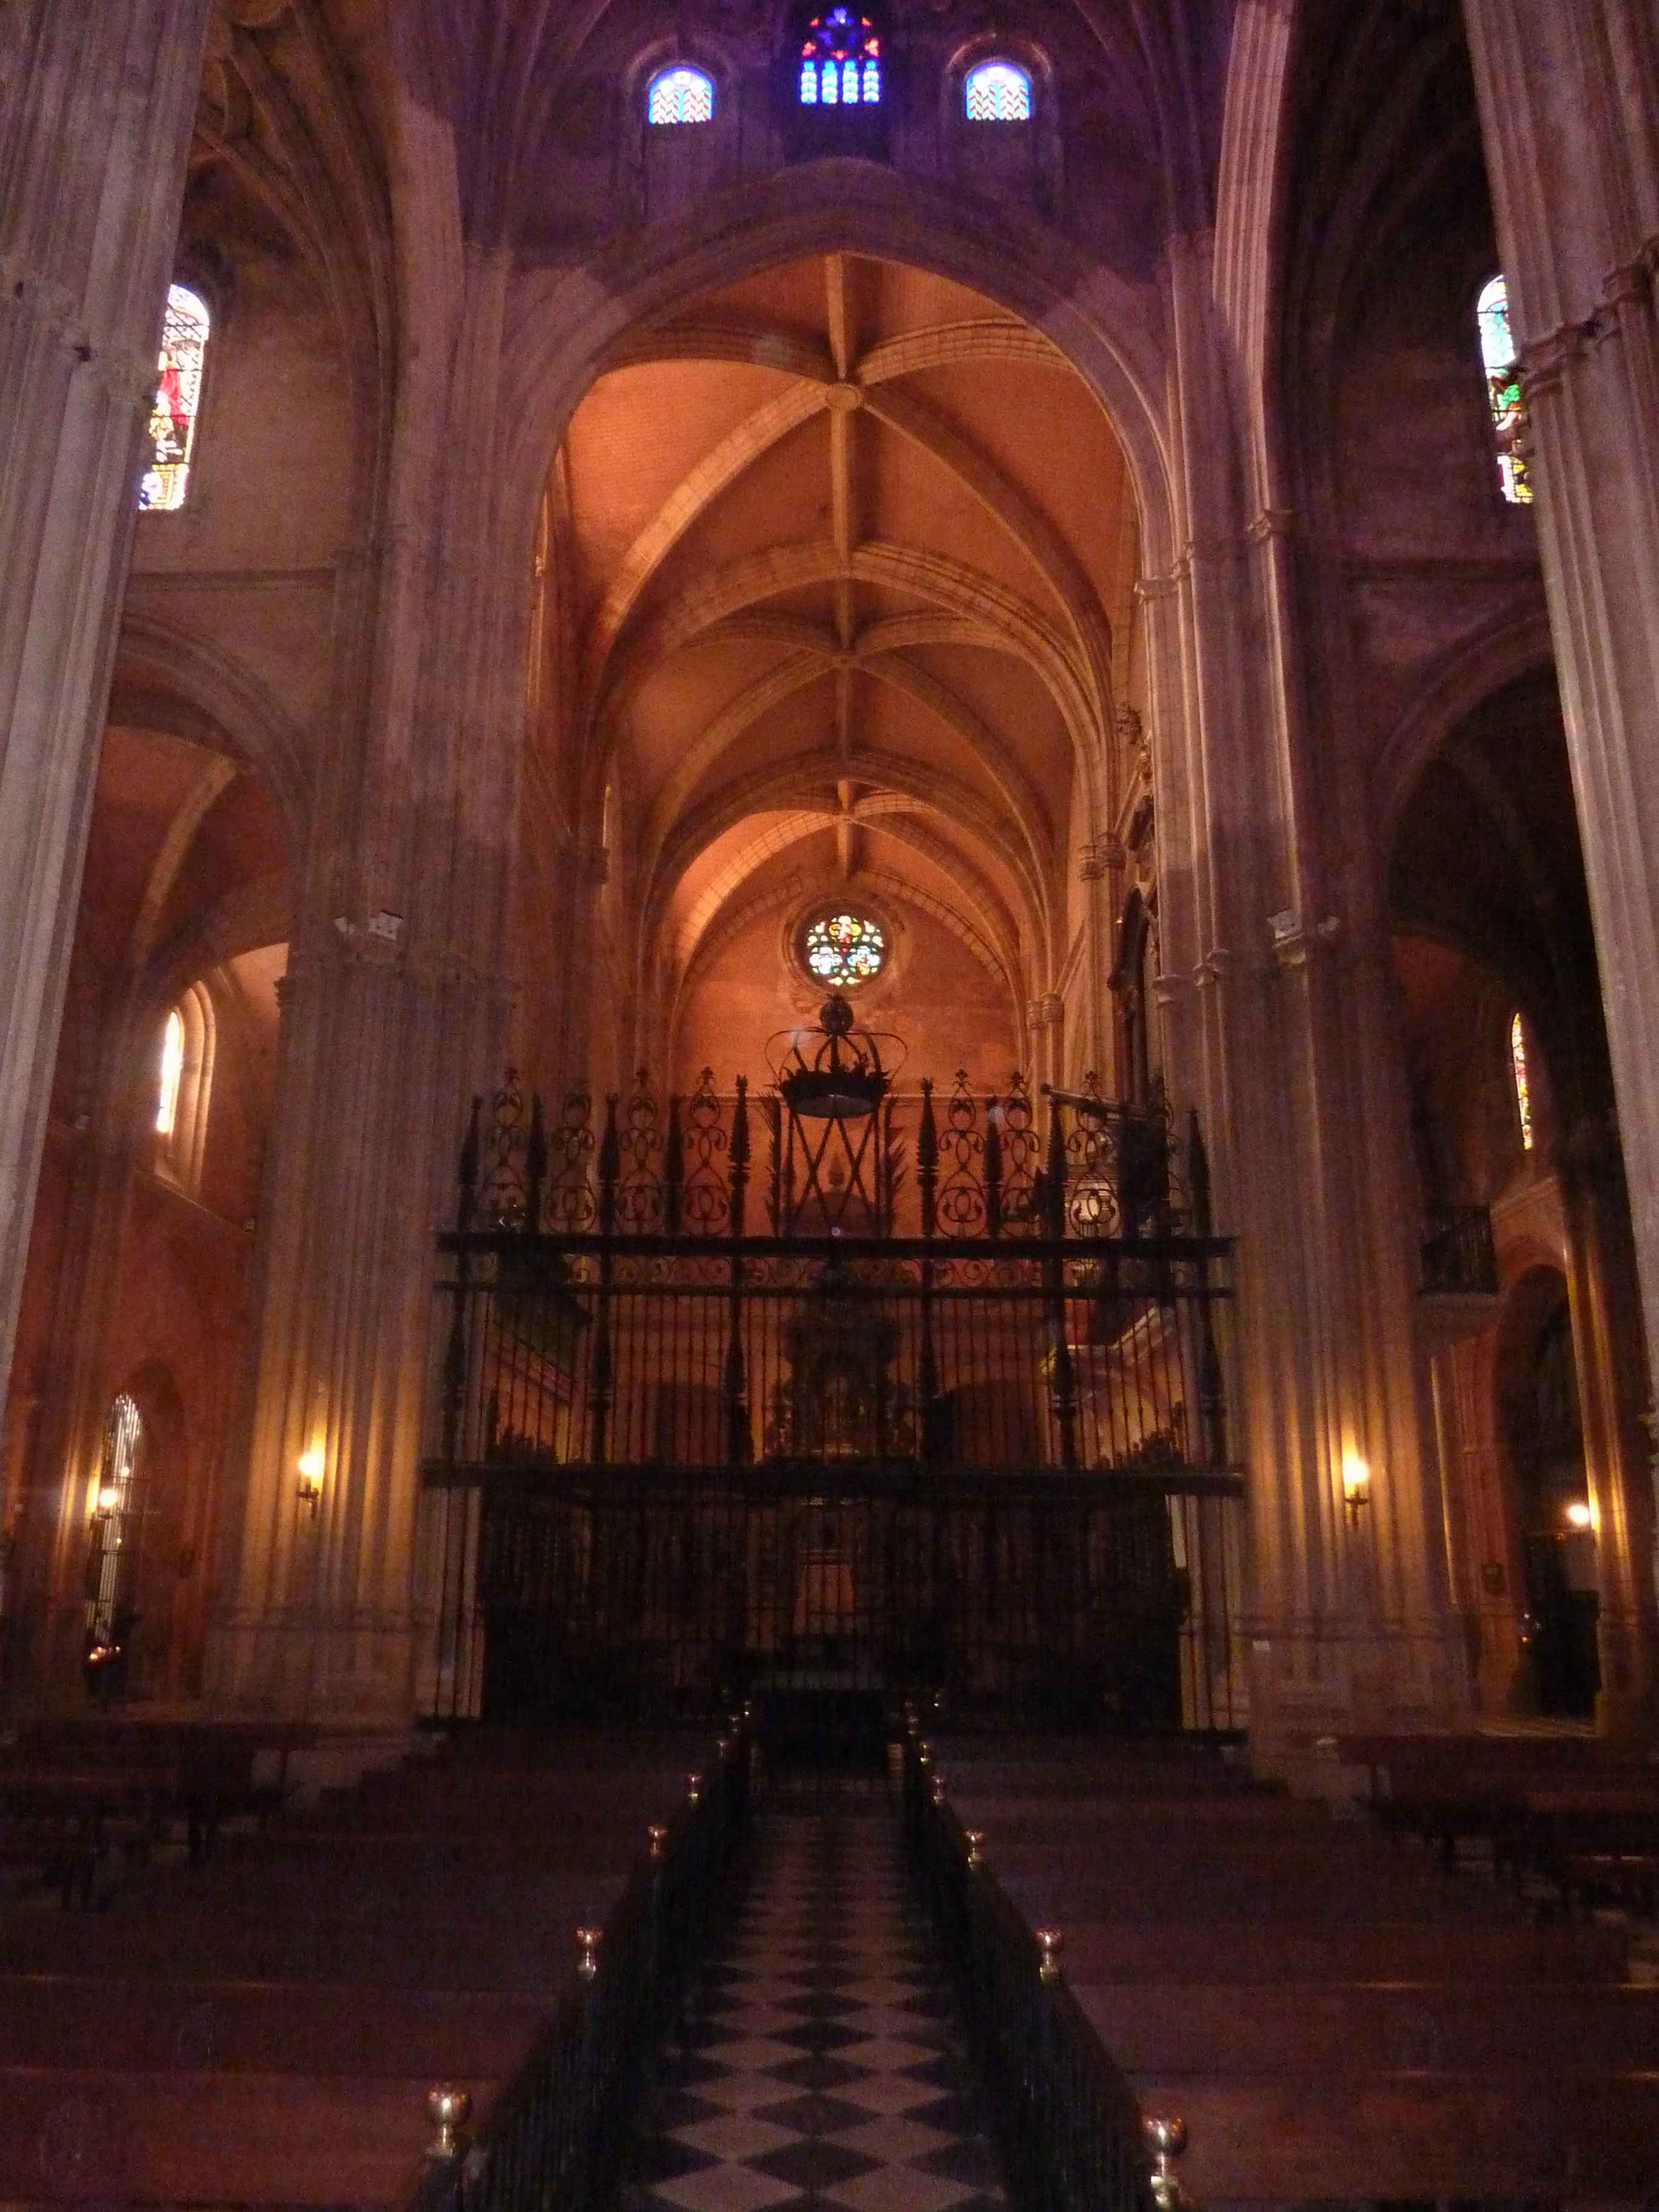 Interieur De L Eglise Saint Marie De Carmona en Images